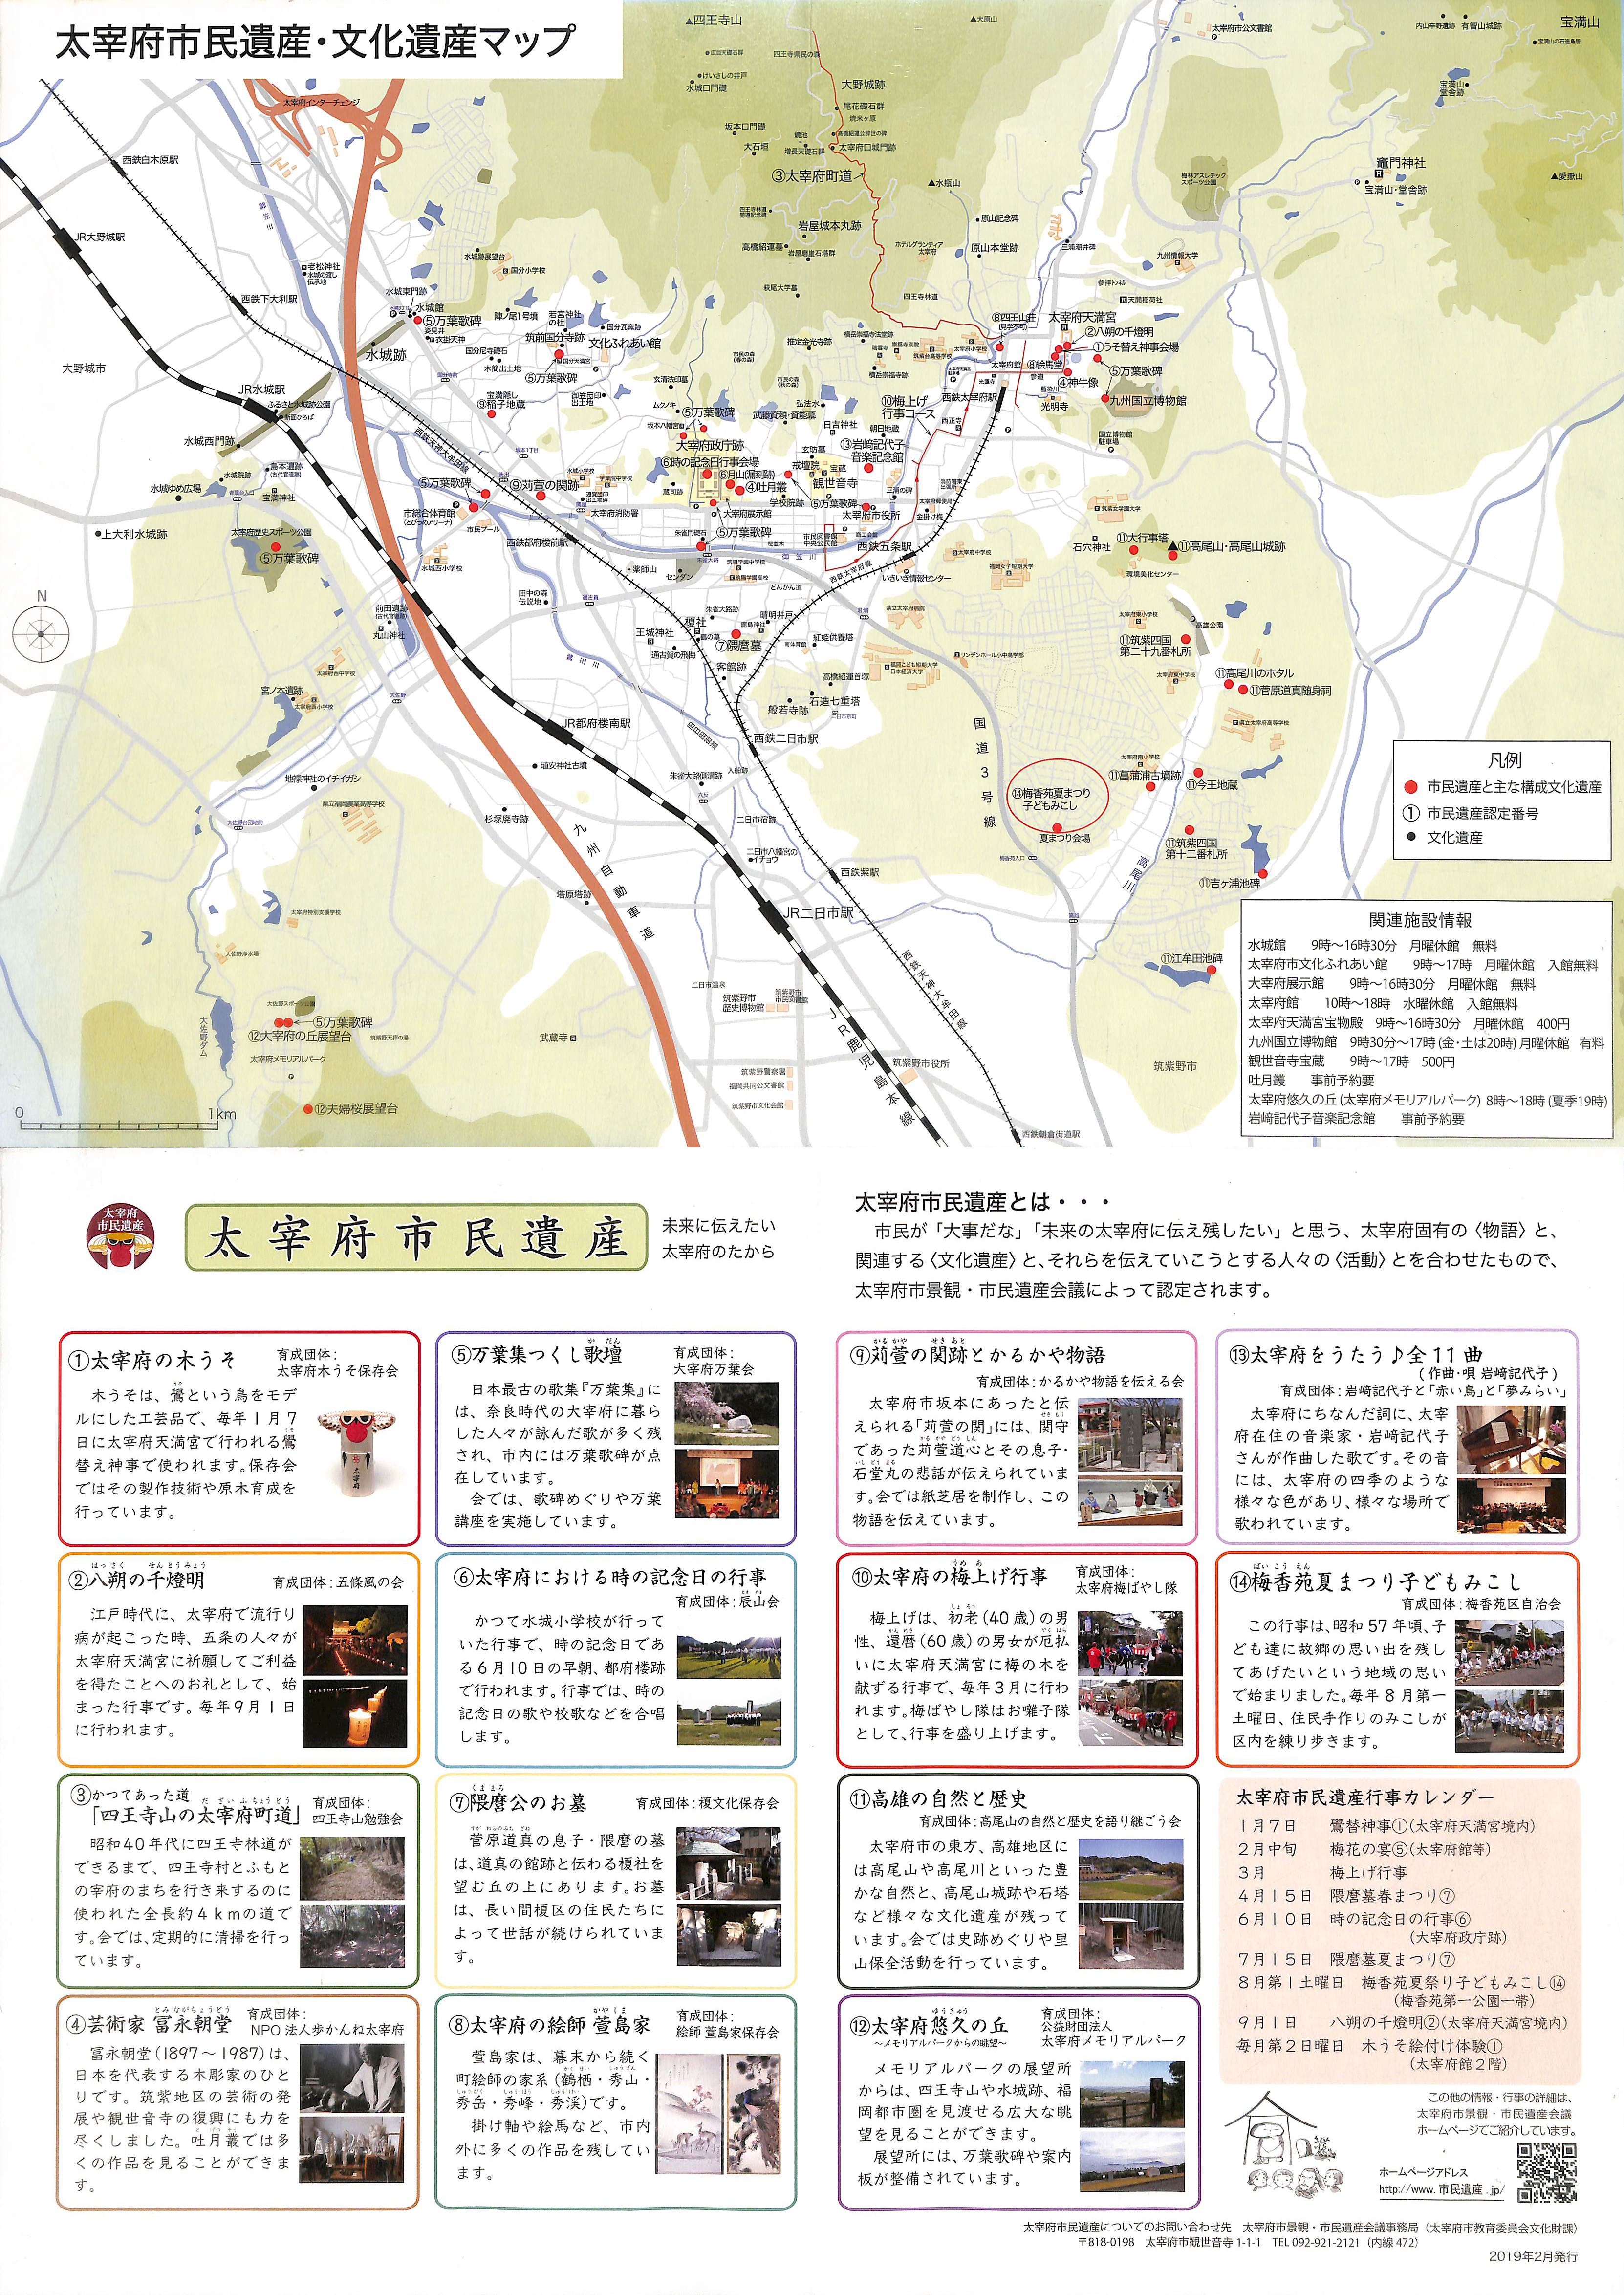 太宰府市民遺産・文化遺産マップ 2019.02